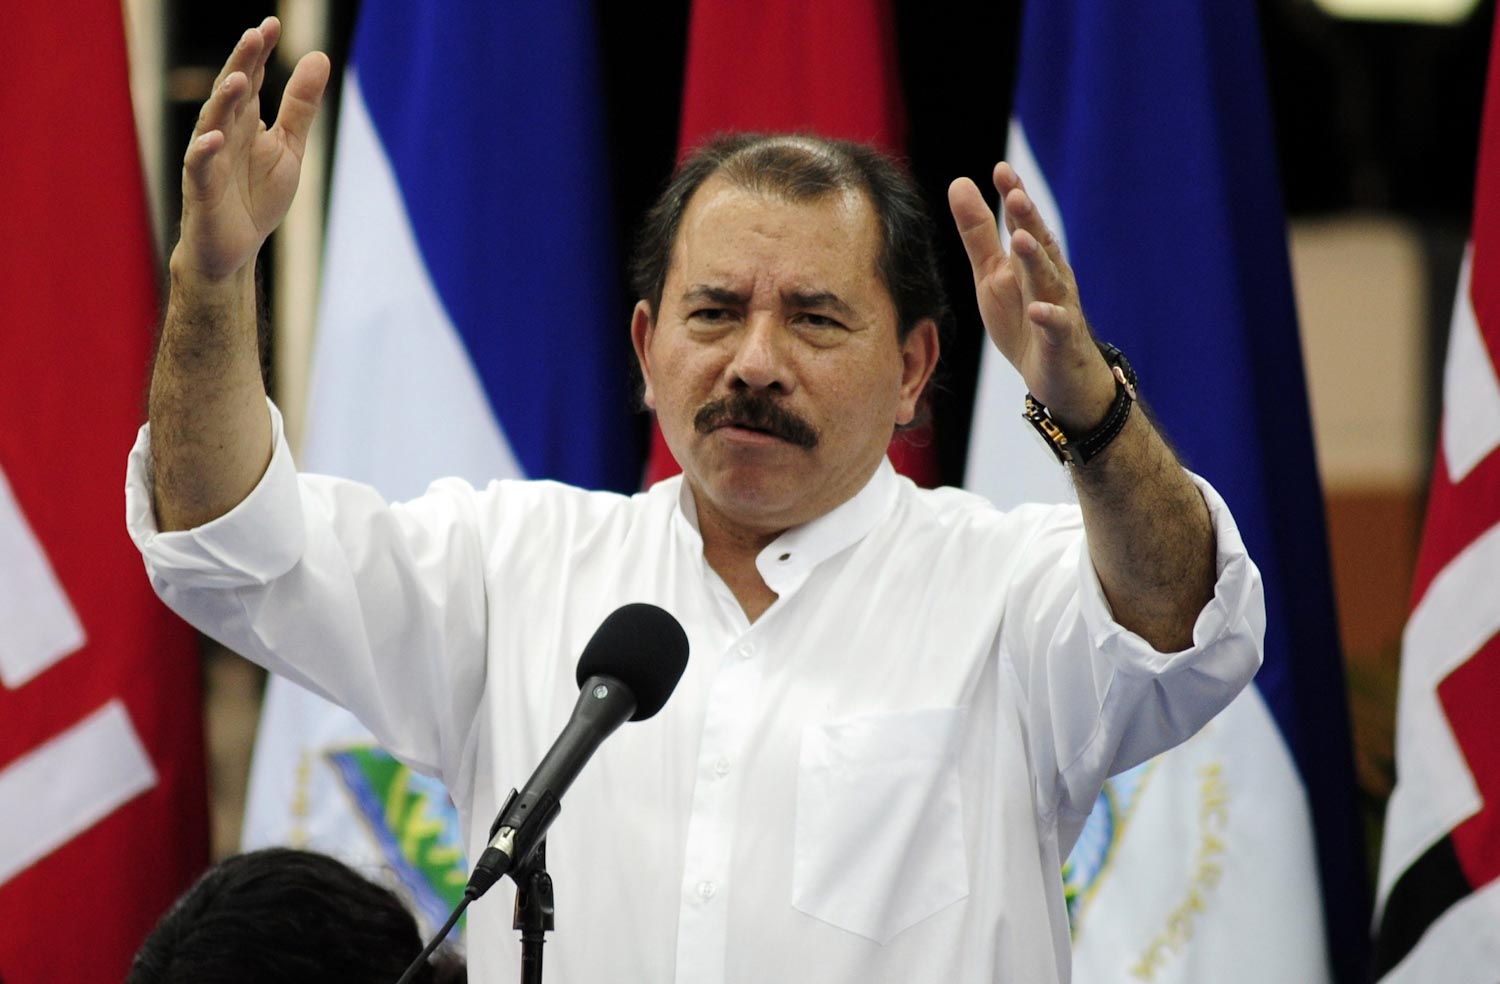 Lista de requisitos para el próximo Presidente de Nicaragua (Atención Caudillos)